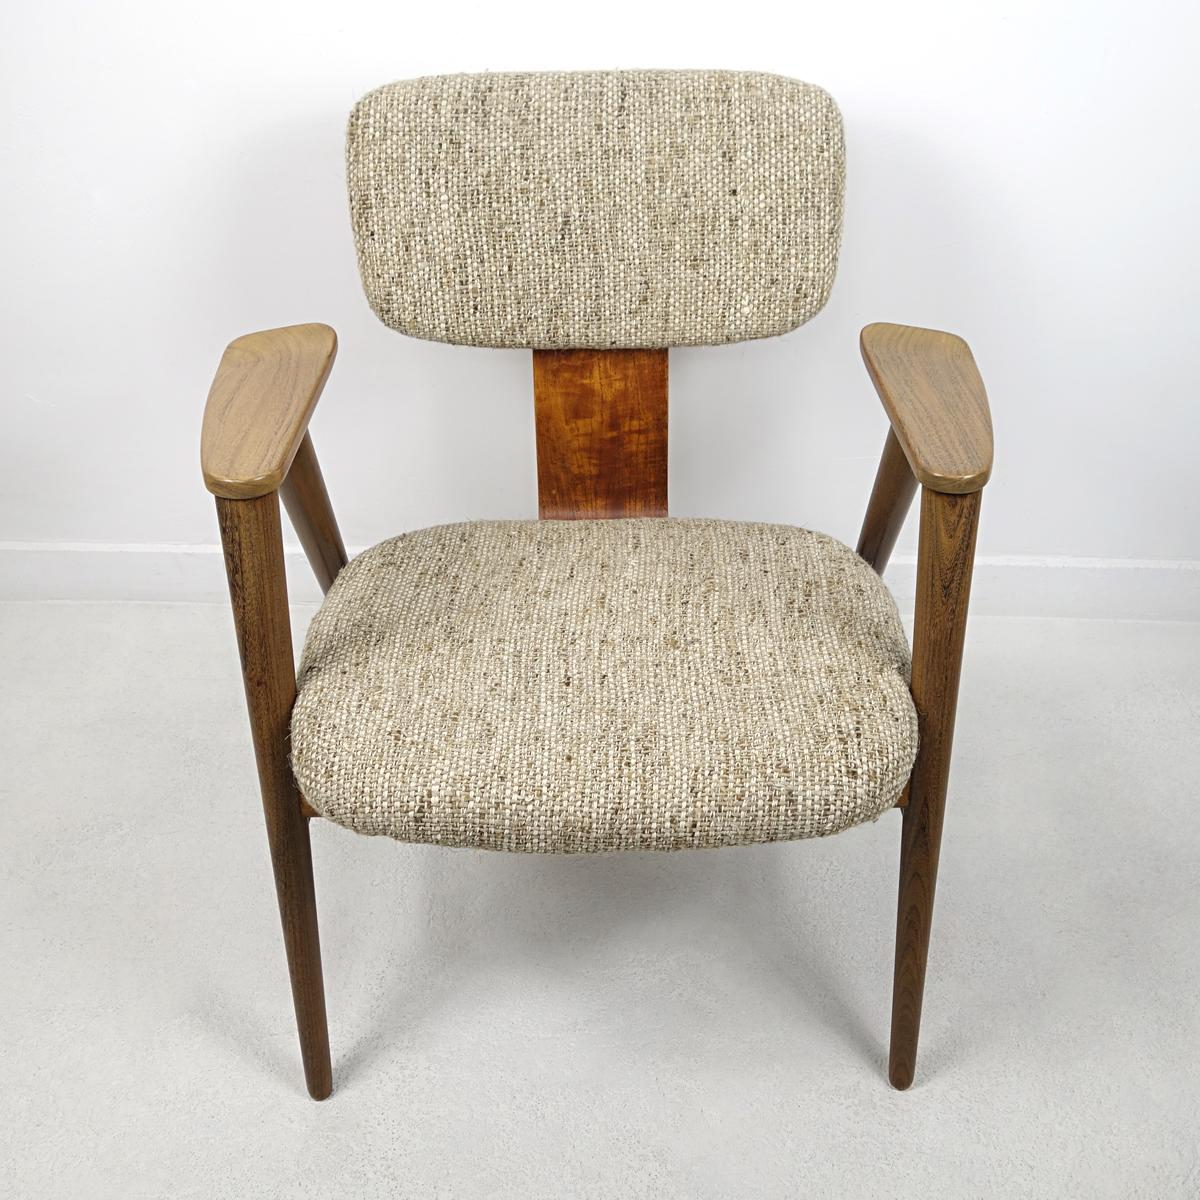 Eleganz und Schönheit sind die Worte, die diesen Stuhl am besten beschreiben. Es wurde von Cees Braakman für das berühmte niederländische Label Pastoe entworfen.
Der Stuhl hat ein Gestell aus Teakholz und ist von uns neu gepolstert worden.